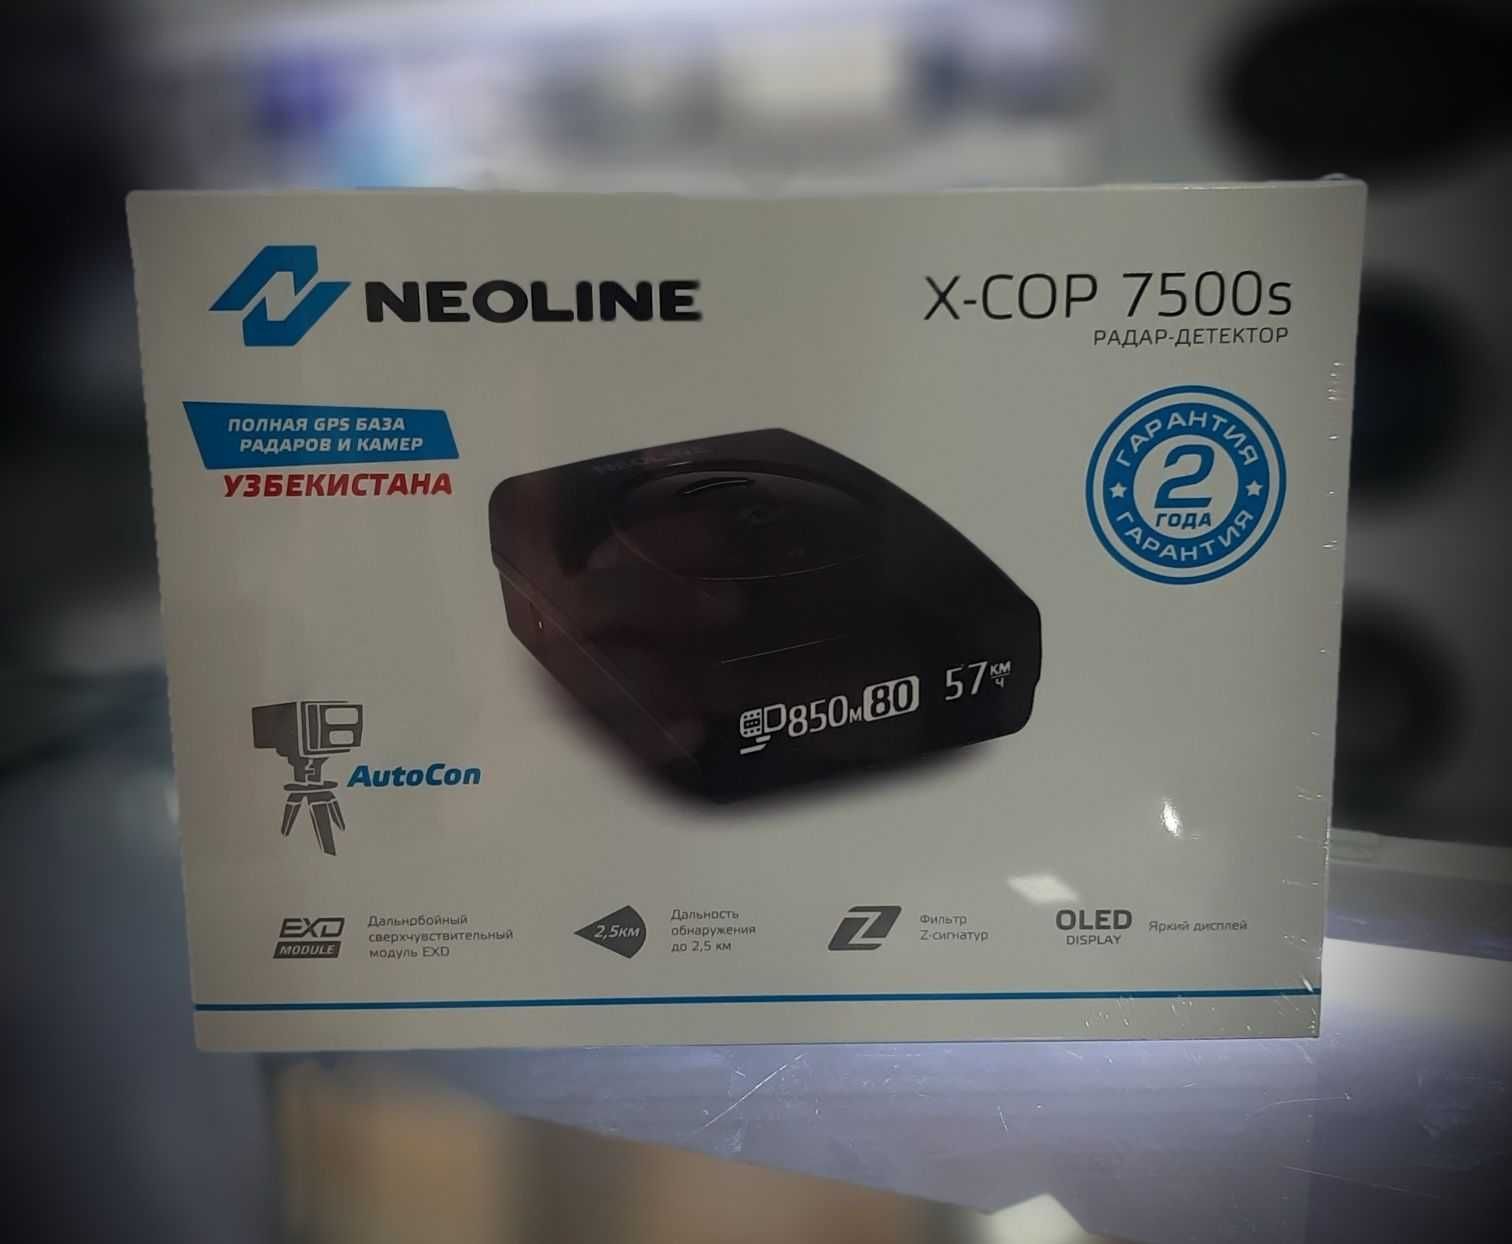 Neoline x-cop 7500s. Official 2год Высококачественный антирадар